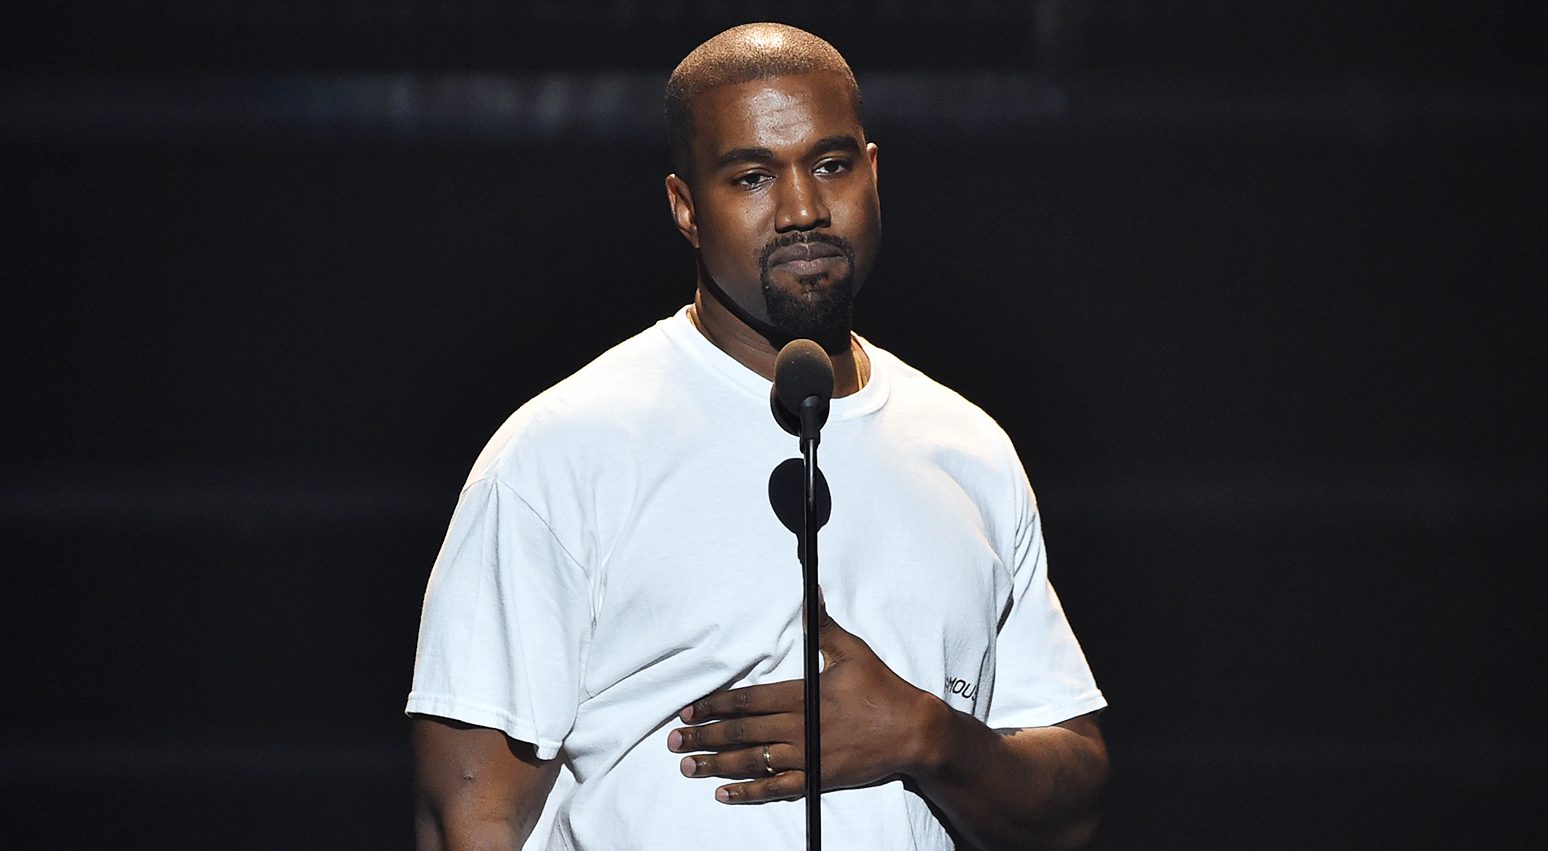 Kanye West abandona un concierto luego de perder la voz. Cúsica Plus